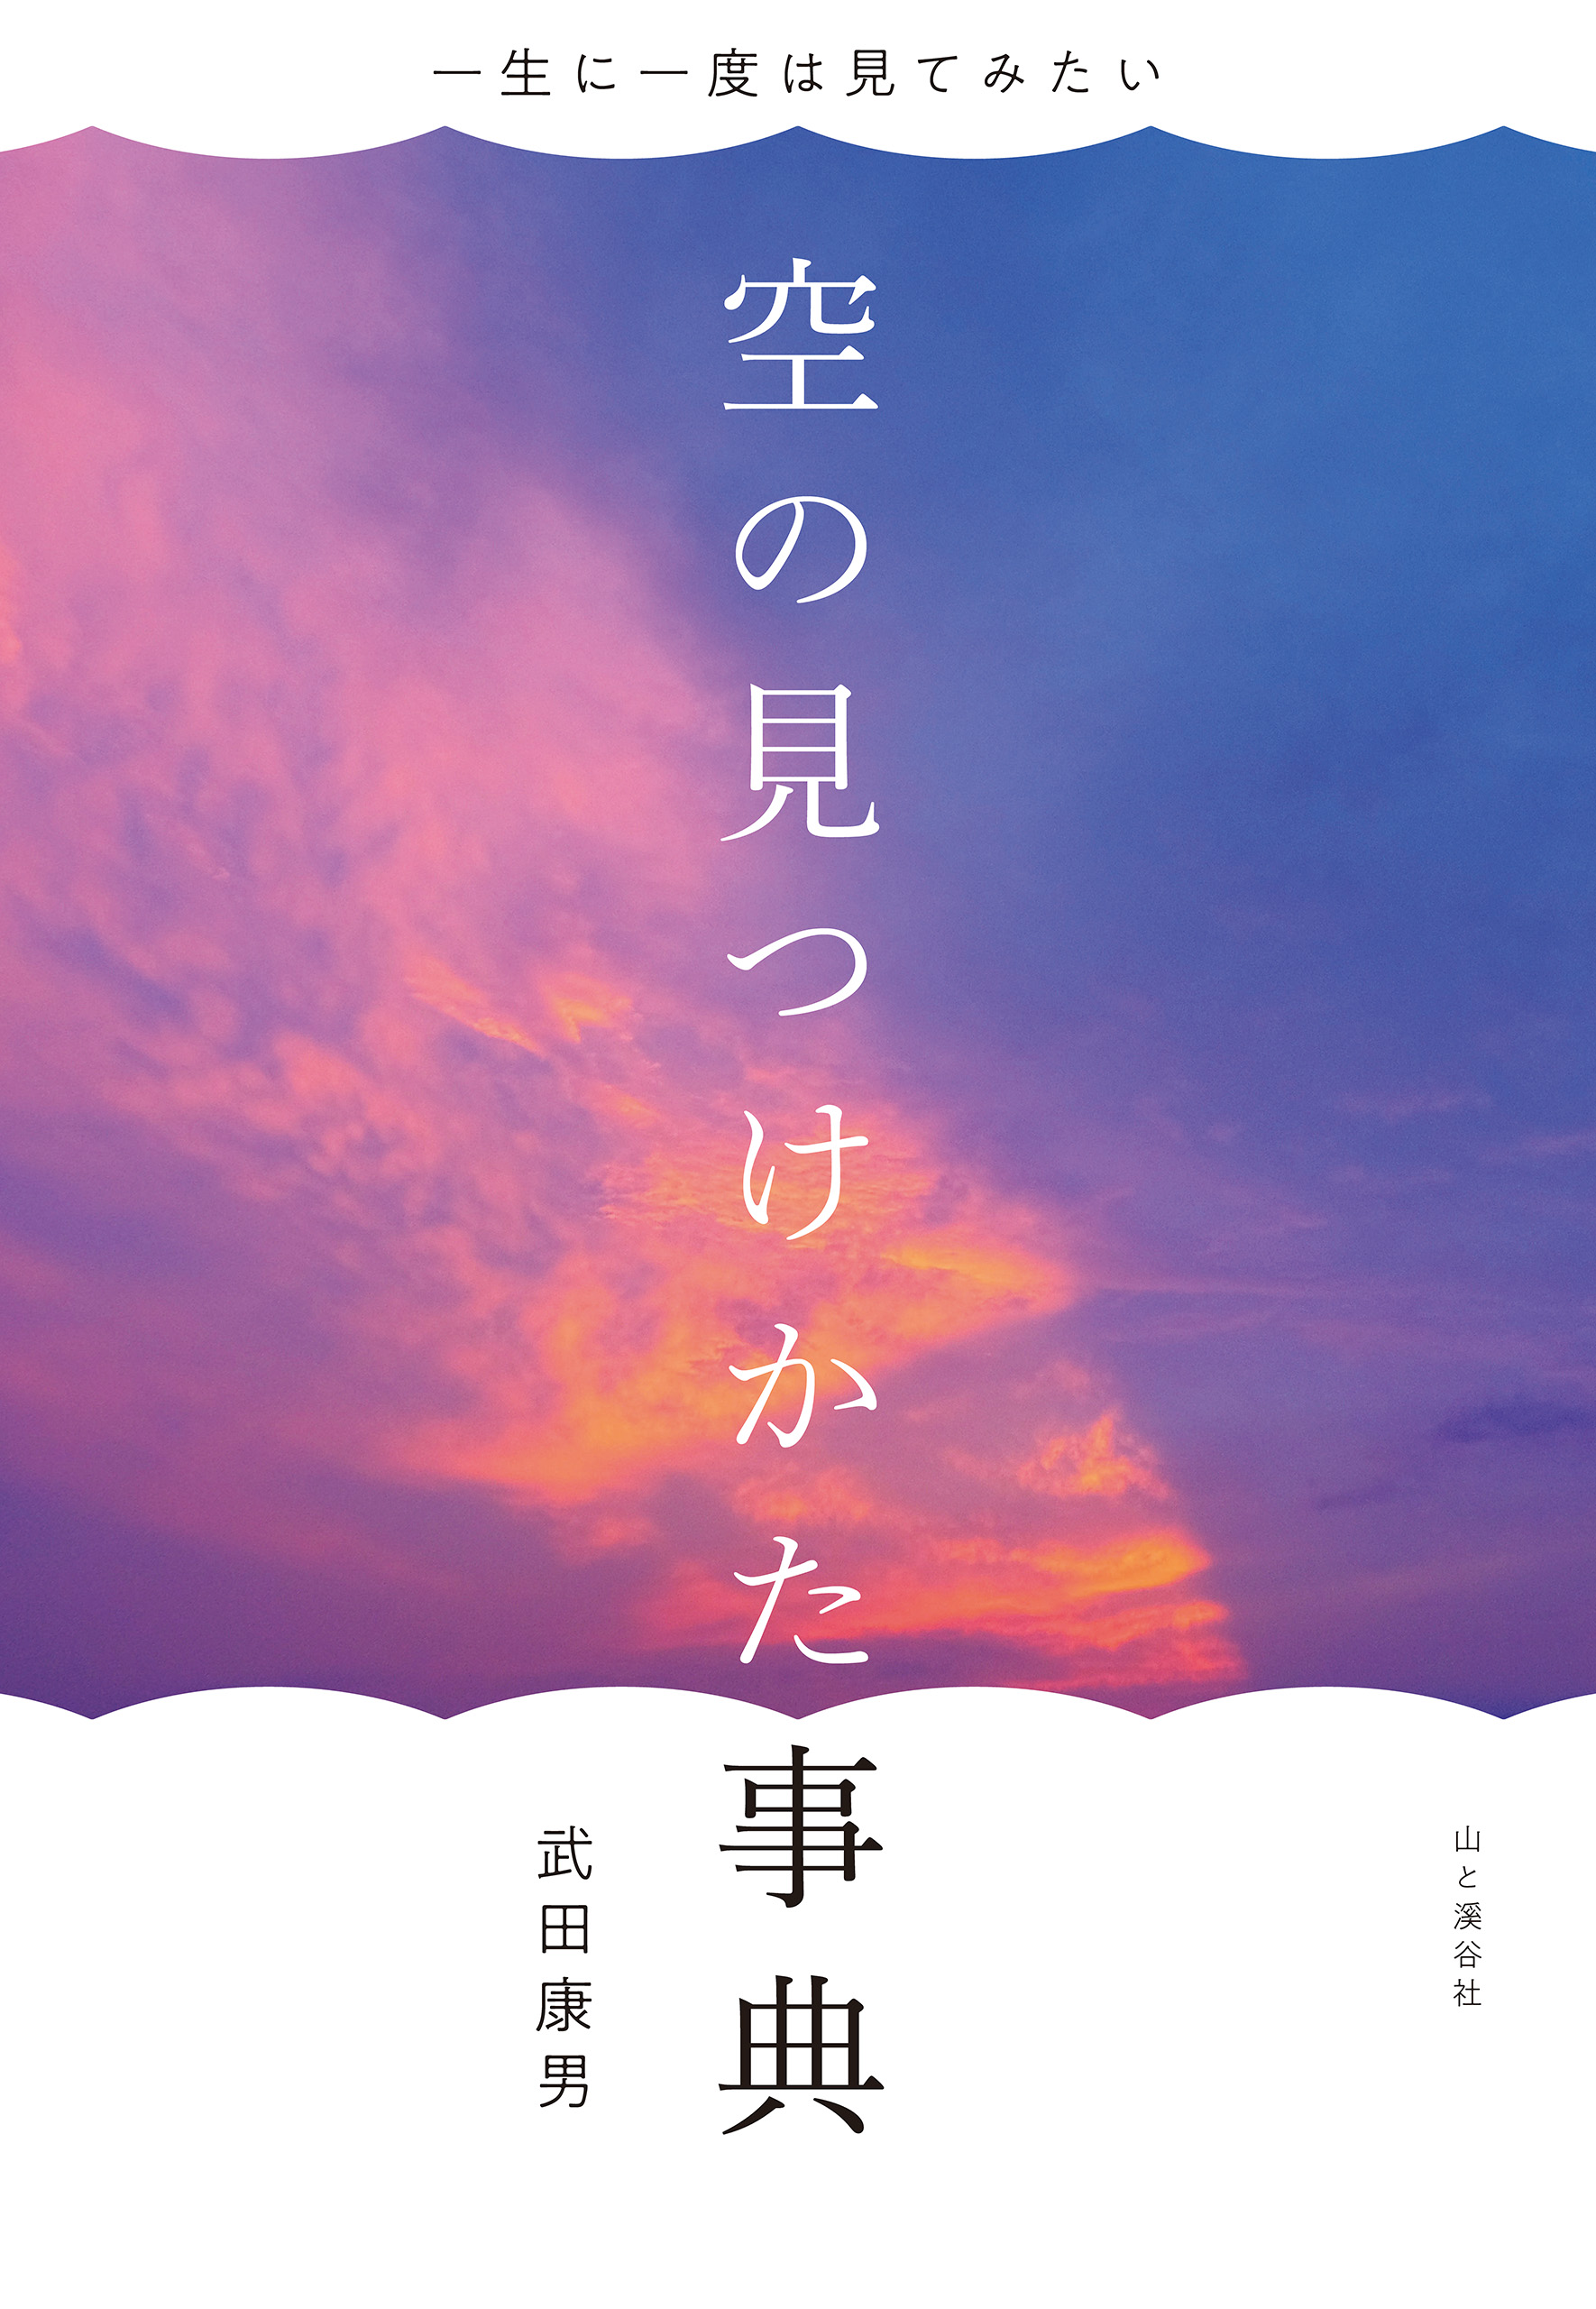 一生に一度は見てみたい 空の見つけかた事典 - 武田康男 - 漫画